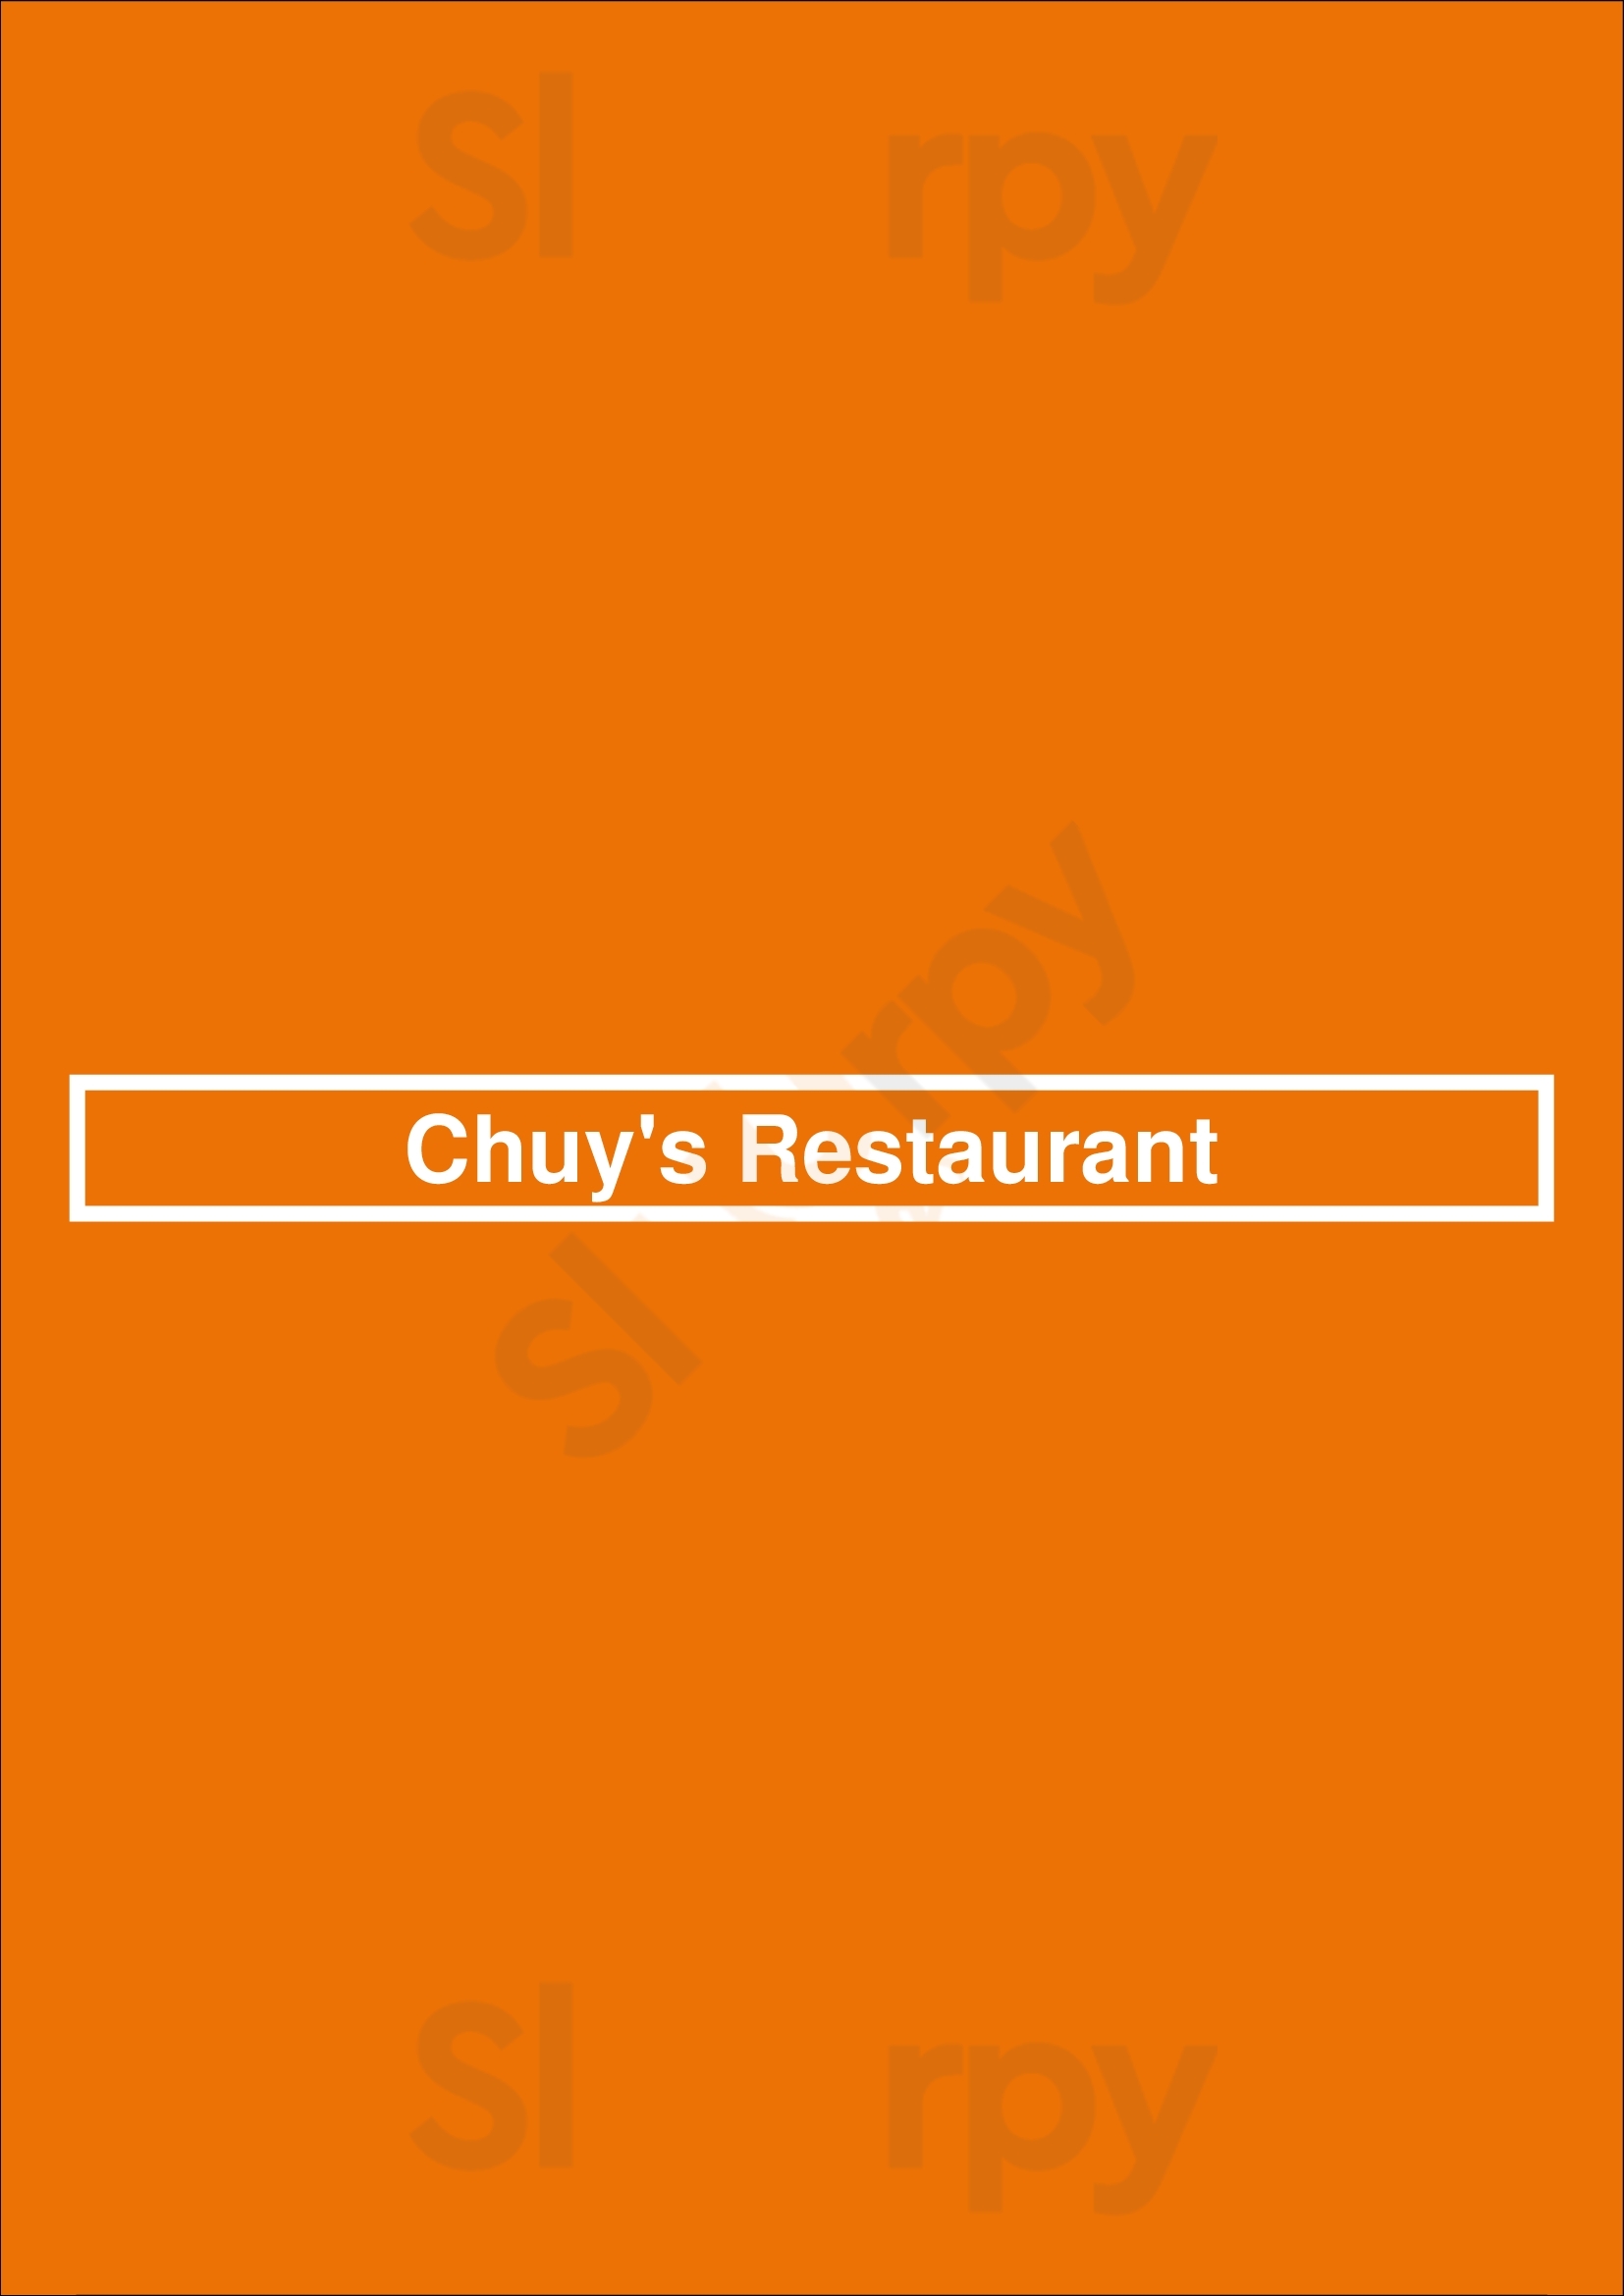 Chuy's Dallas Menu - 1